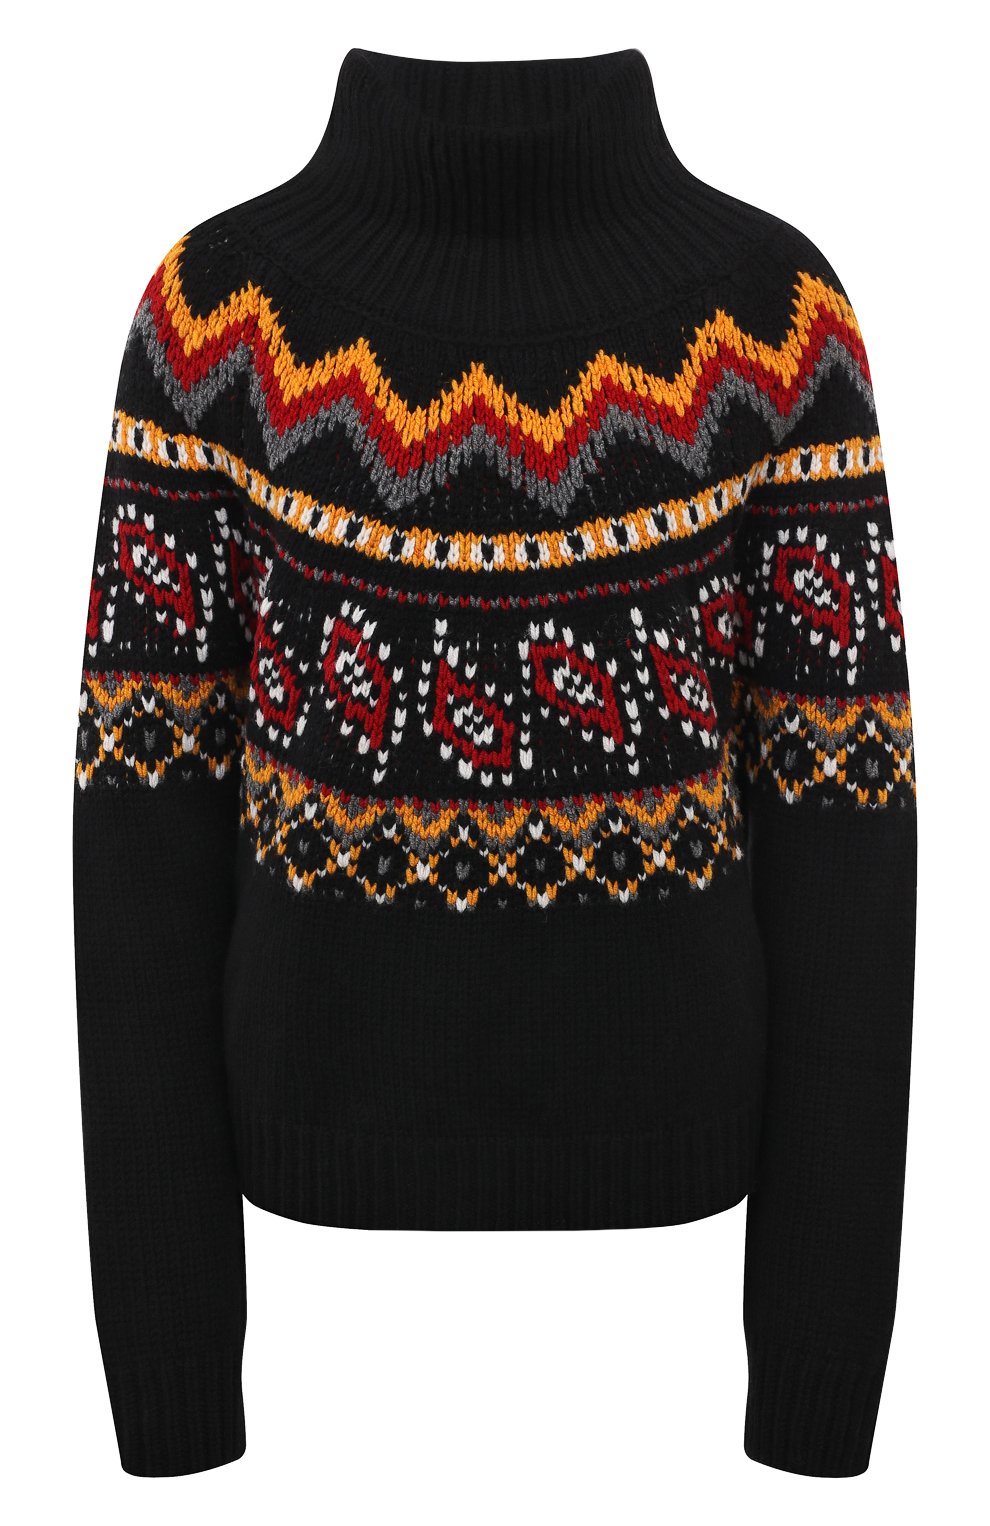 Вязаный свитер в стиле ColorBlock – купить в интернет-магазине lilyhammer.ru с доставкой